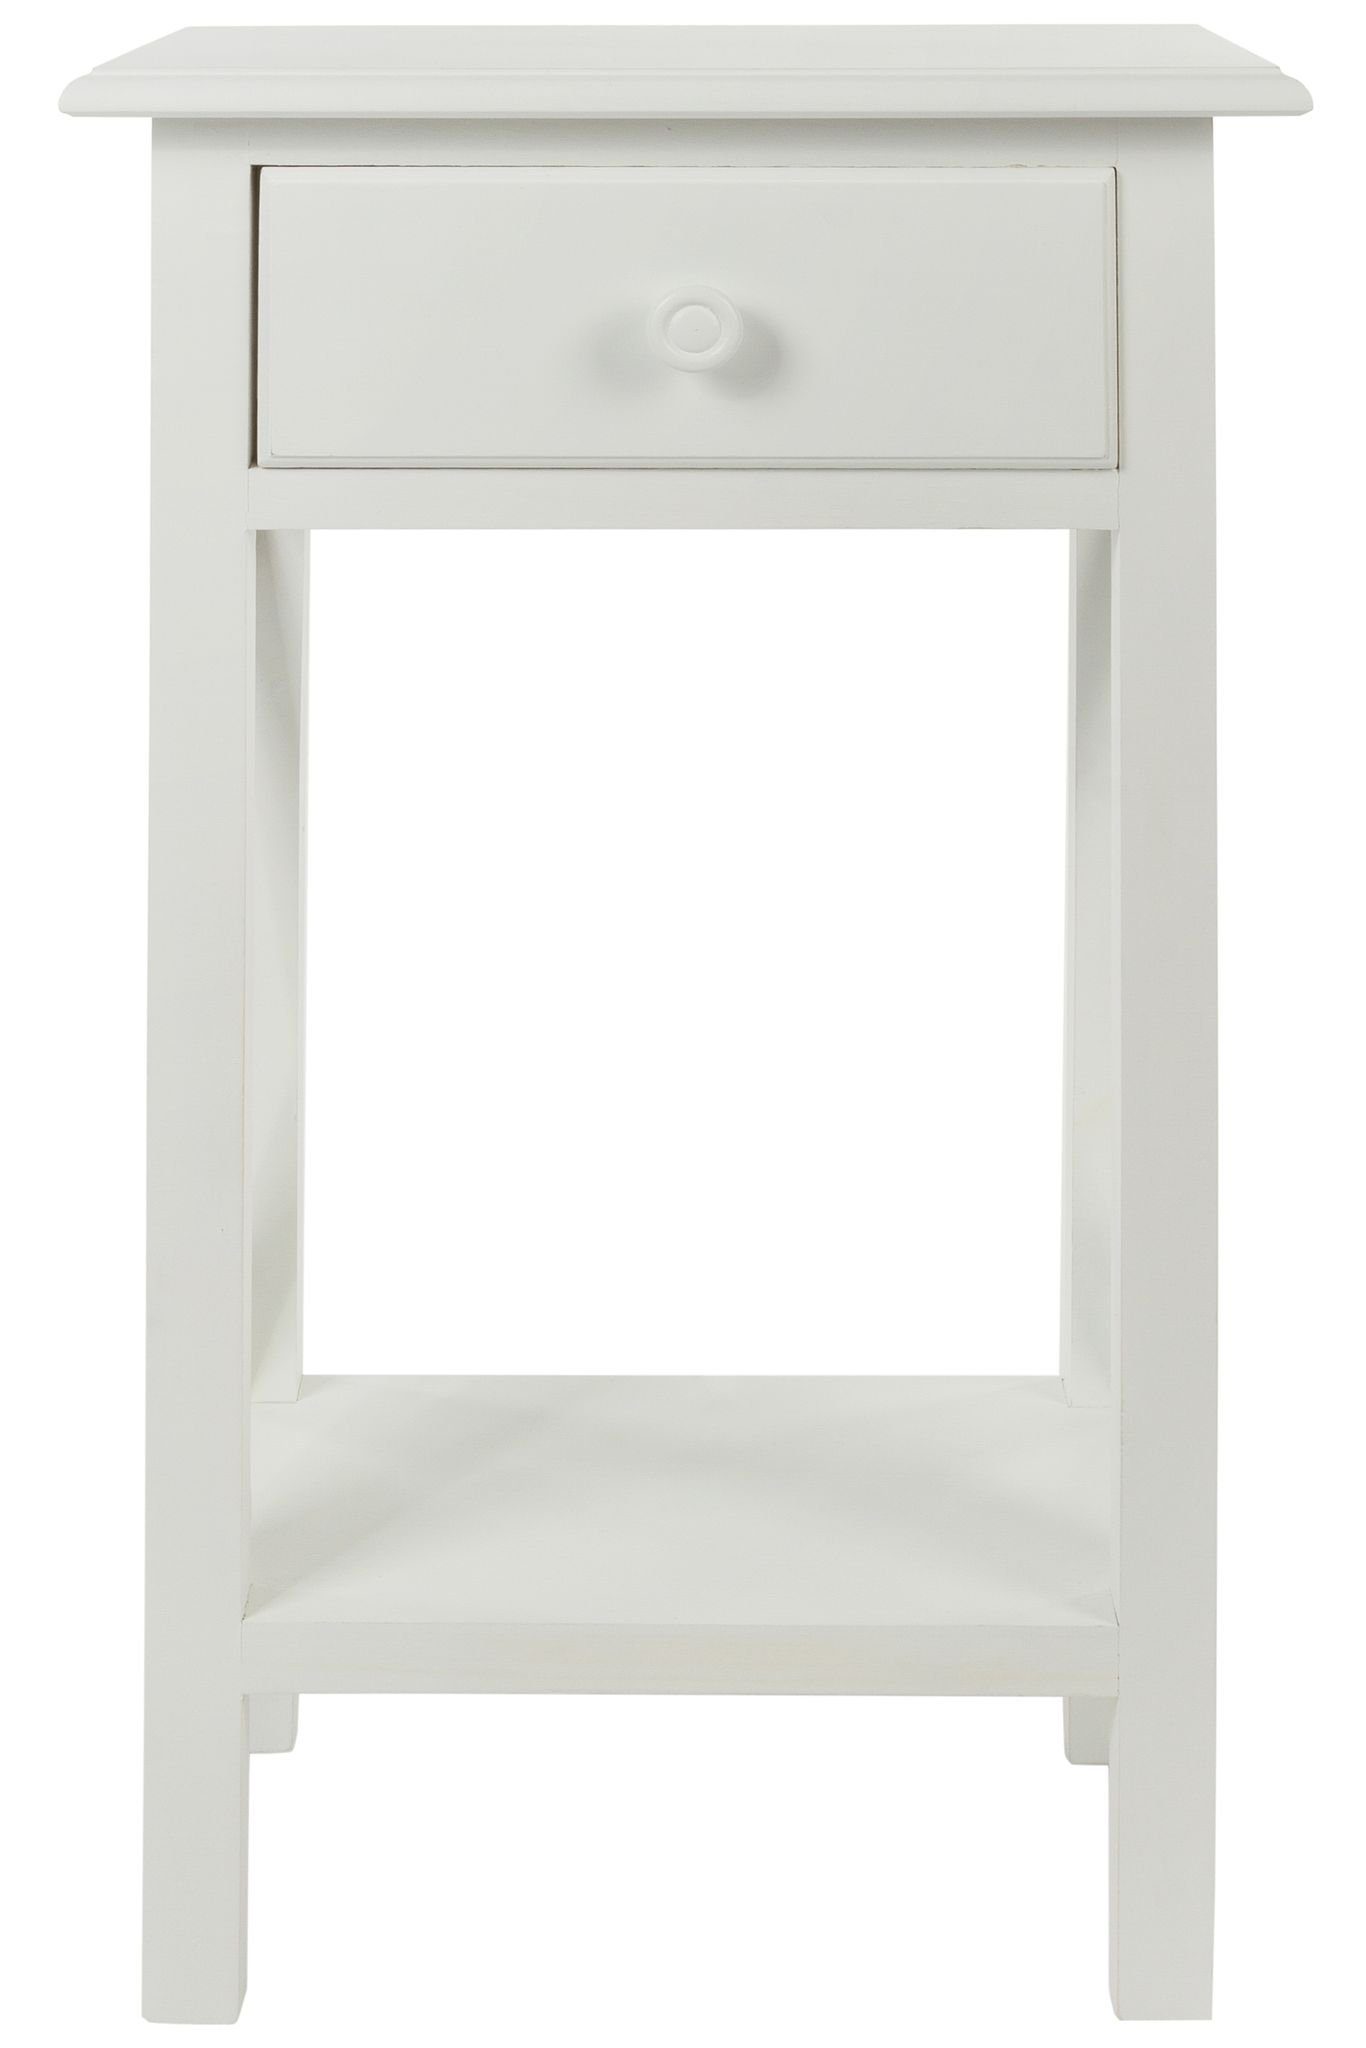 elbmöbel Beistelltisch Telefontisch Holz Schublade cm Beistelltisch weiß 55x35x68 1 antik (FALSCH), weiß Konsolentisch